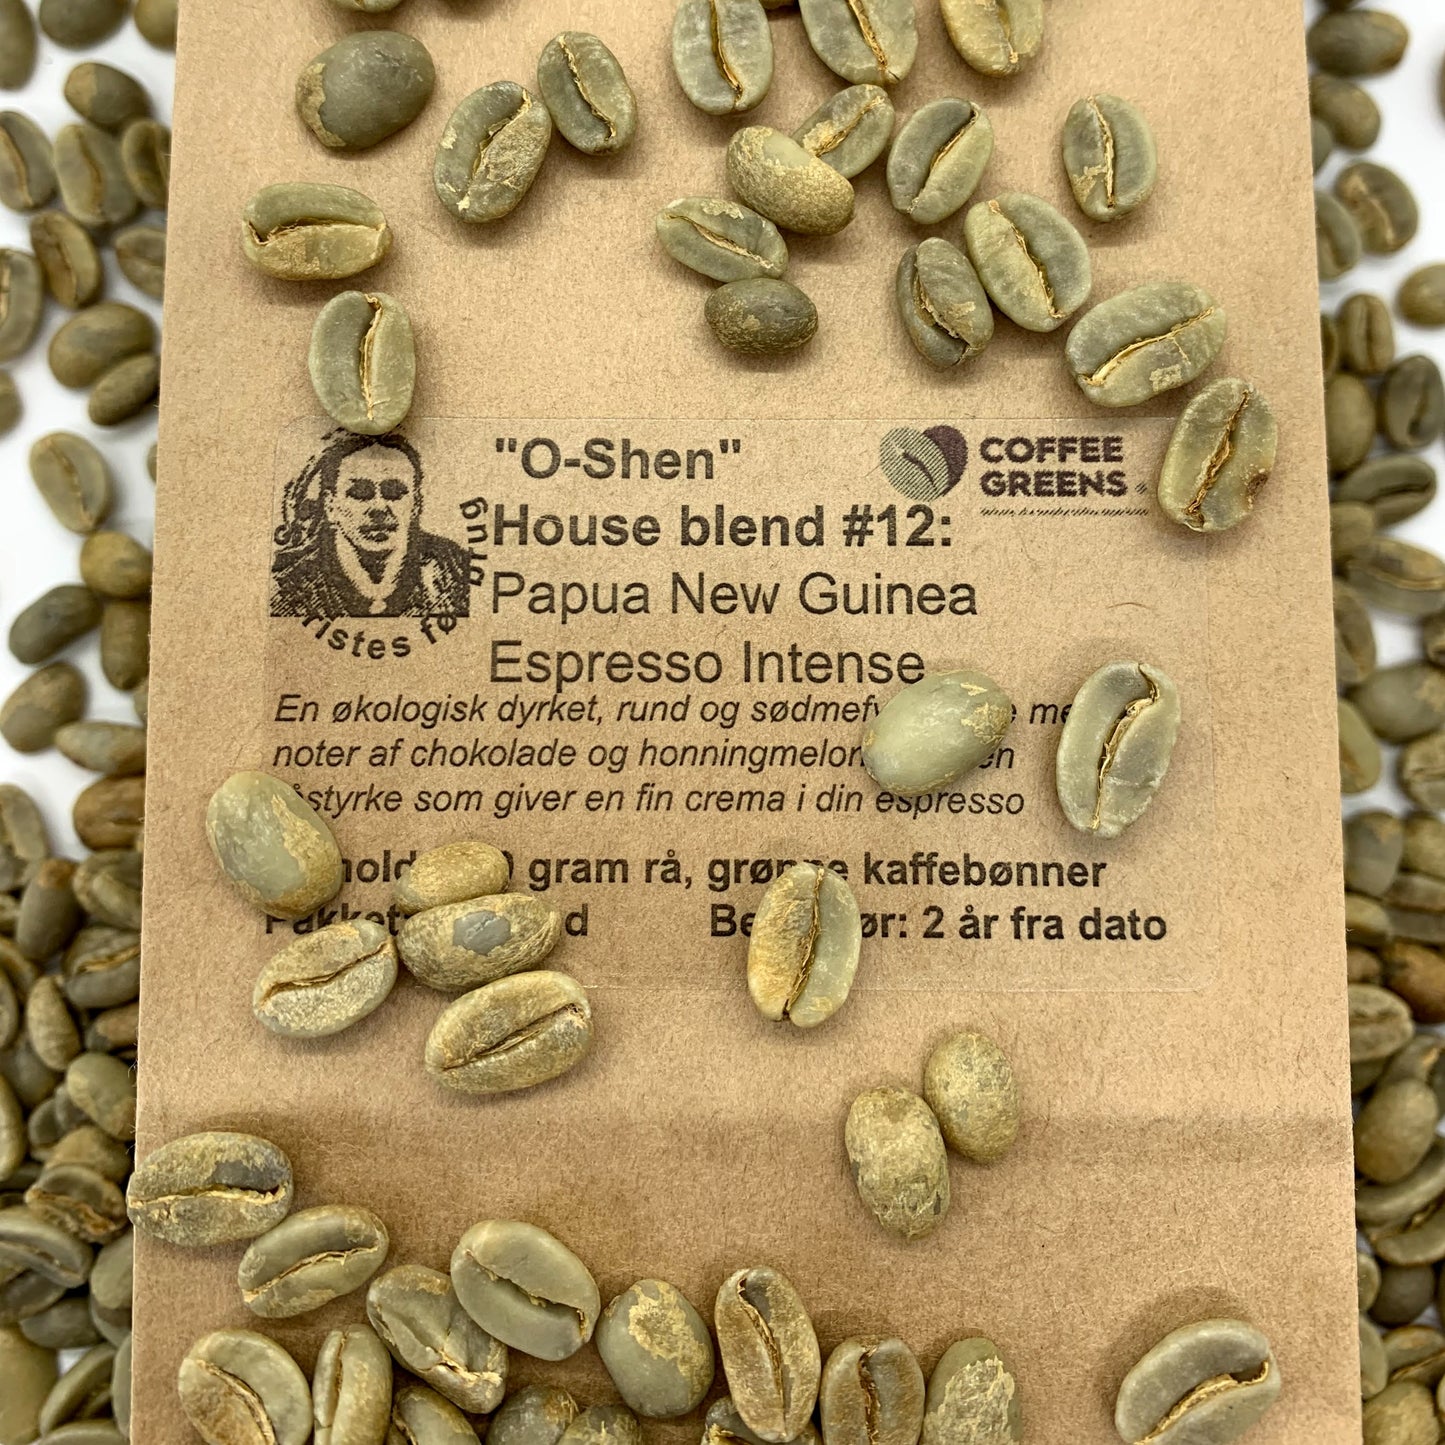 "O-Shen" - House blend #12: Papua New Guinea Espresso Intense - Rå, grønne kaffebønner.